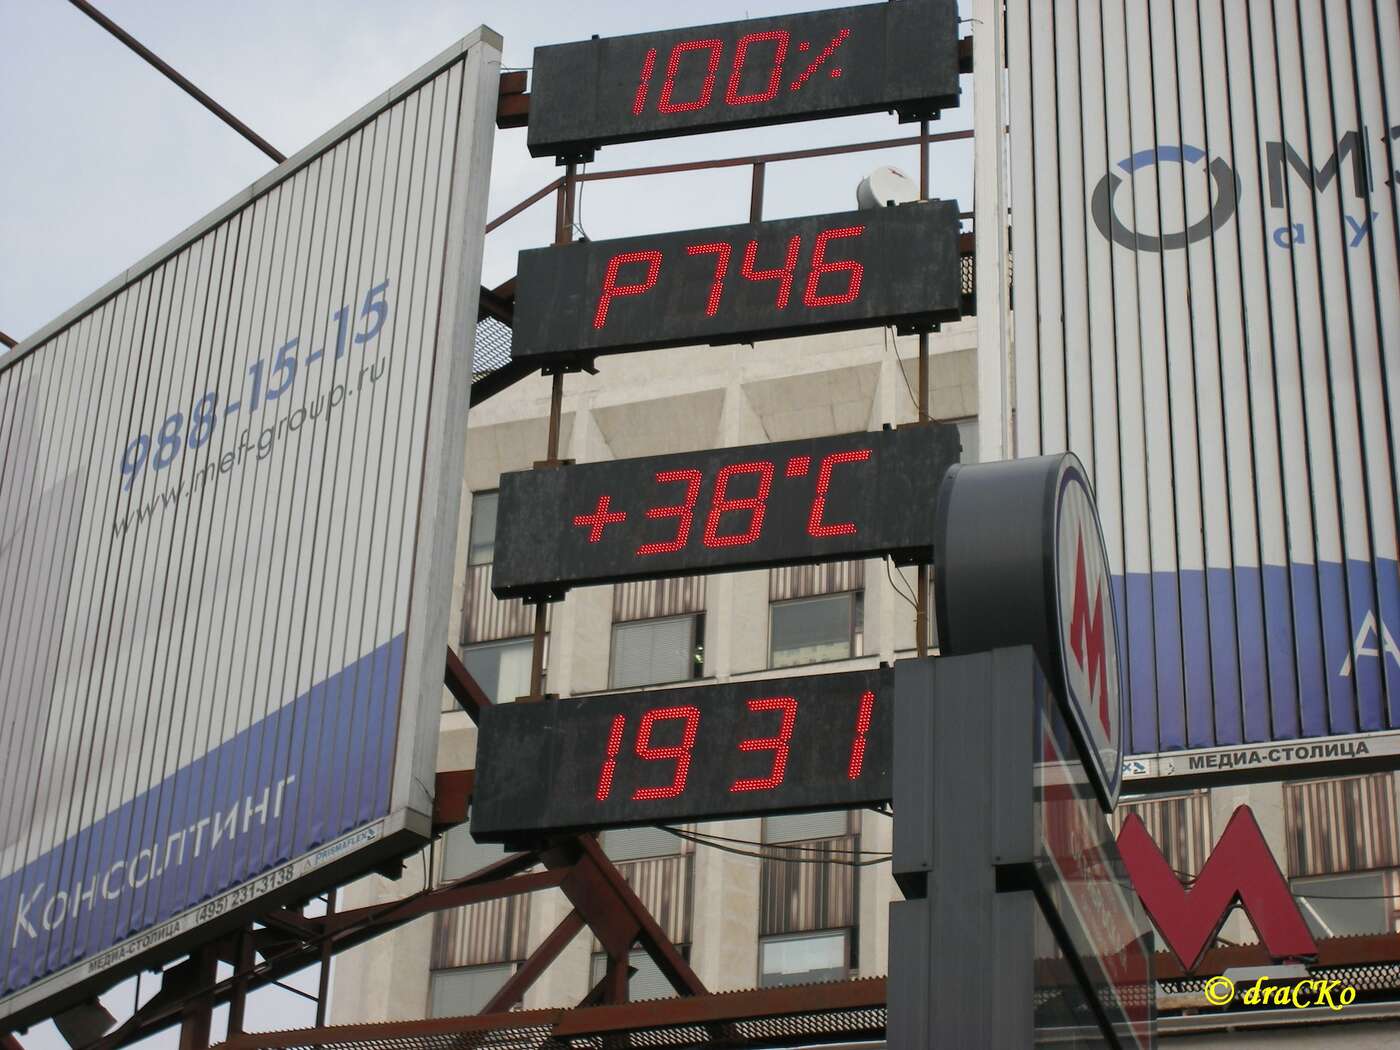 Moskau, 19:31Uhr, 38°C, die Stadt schwitzt